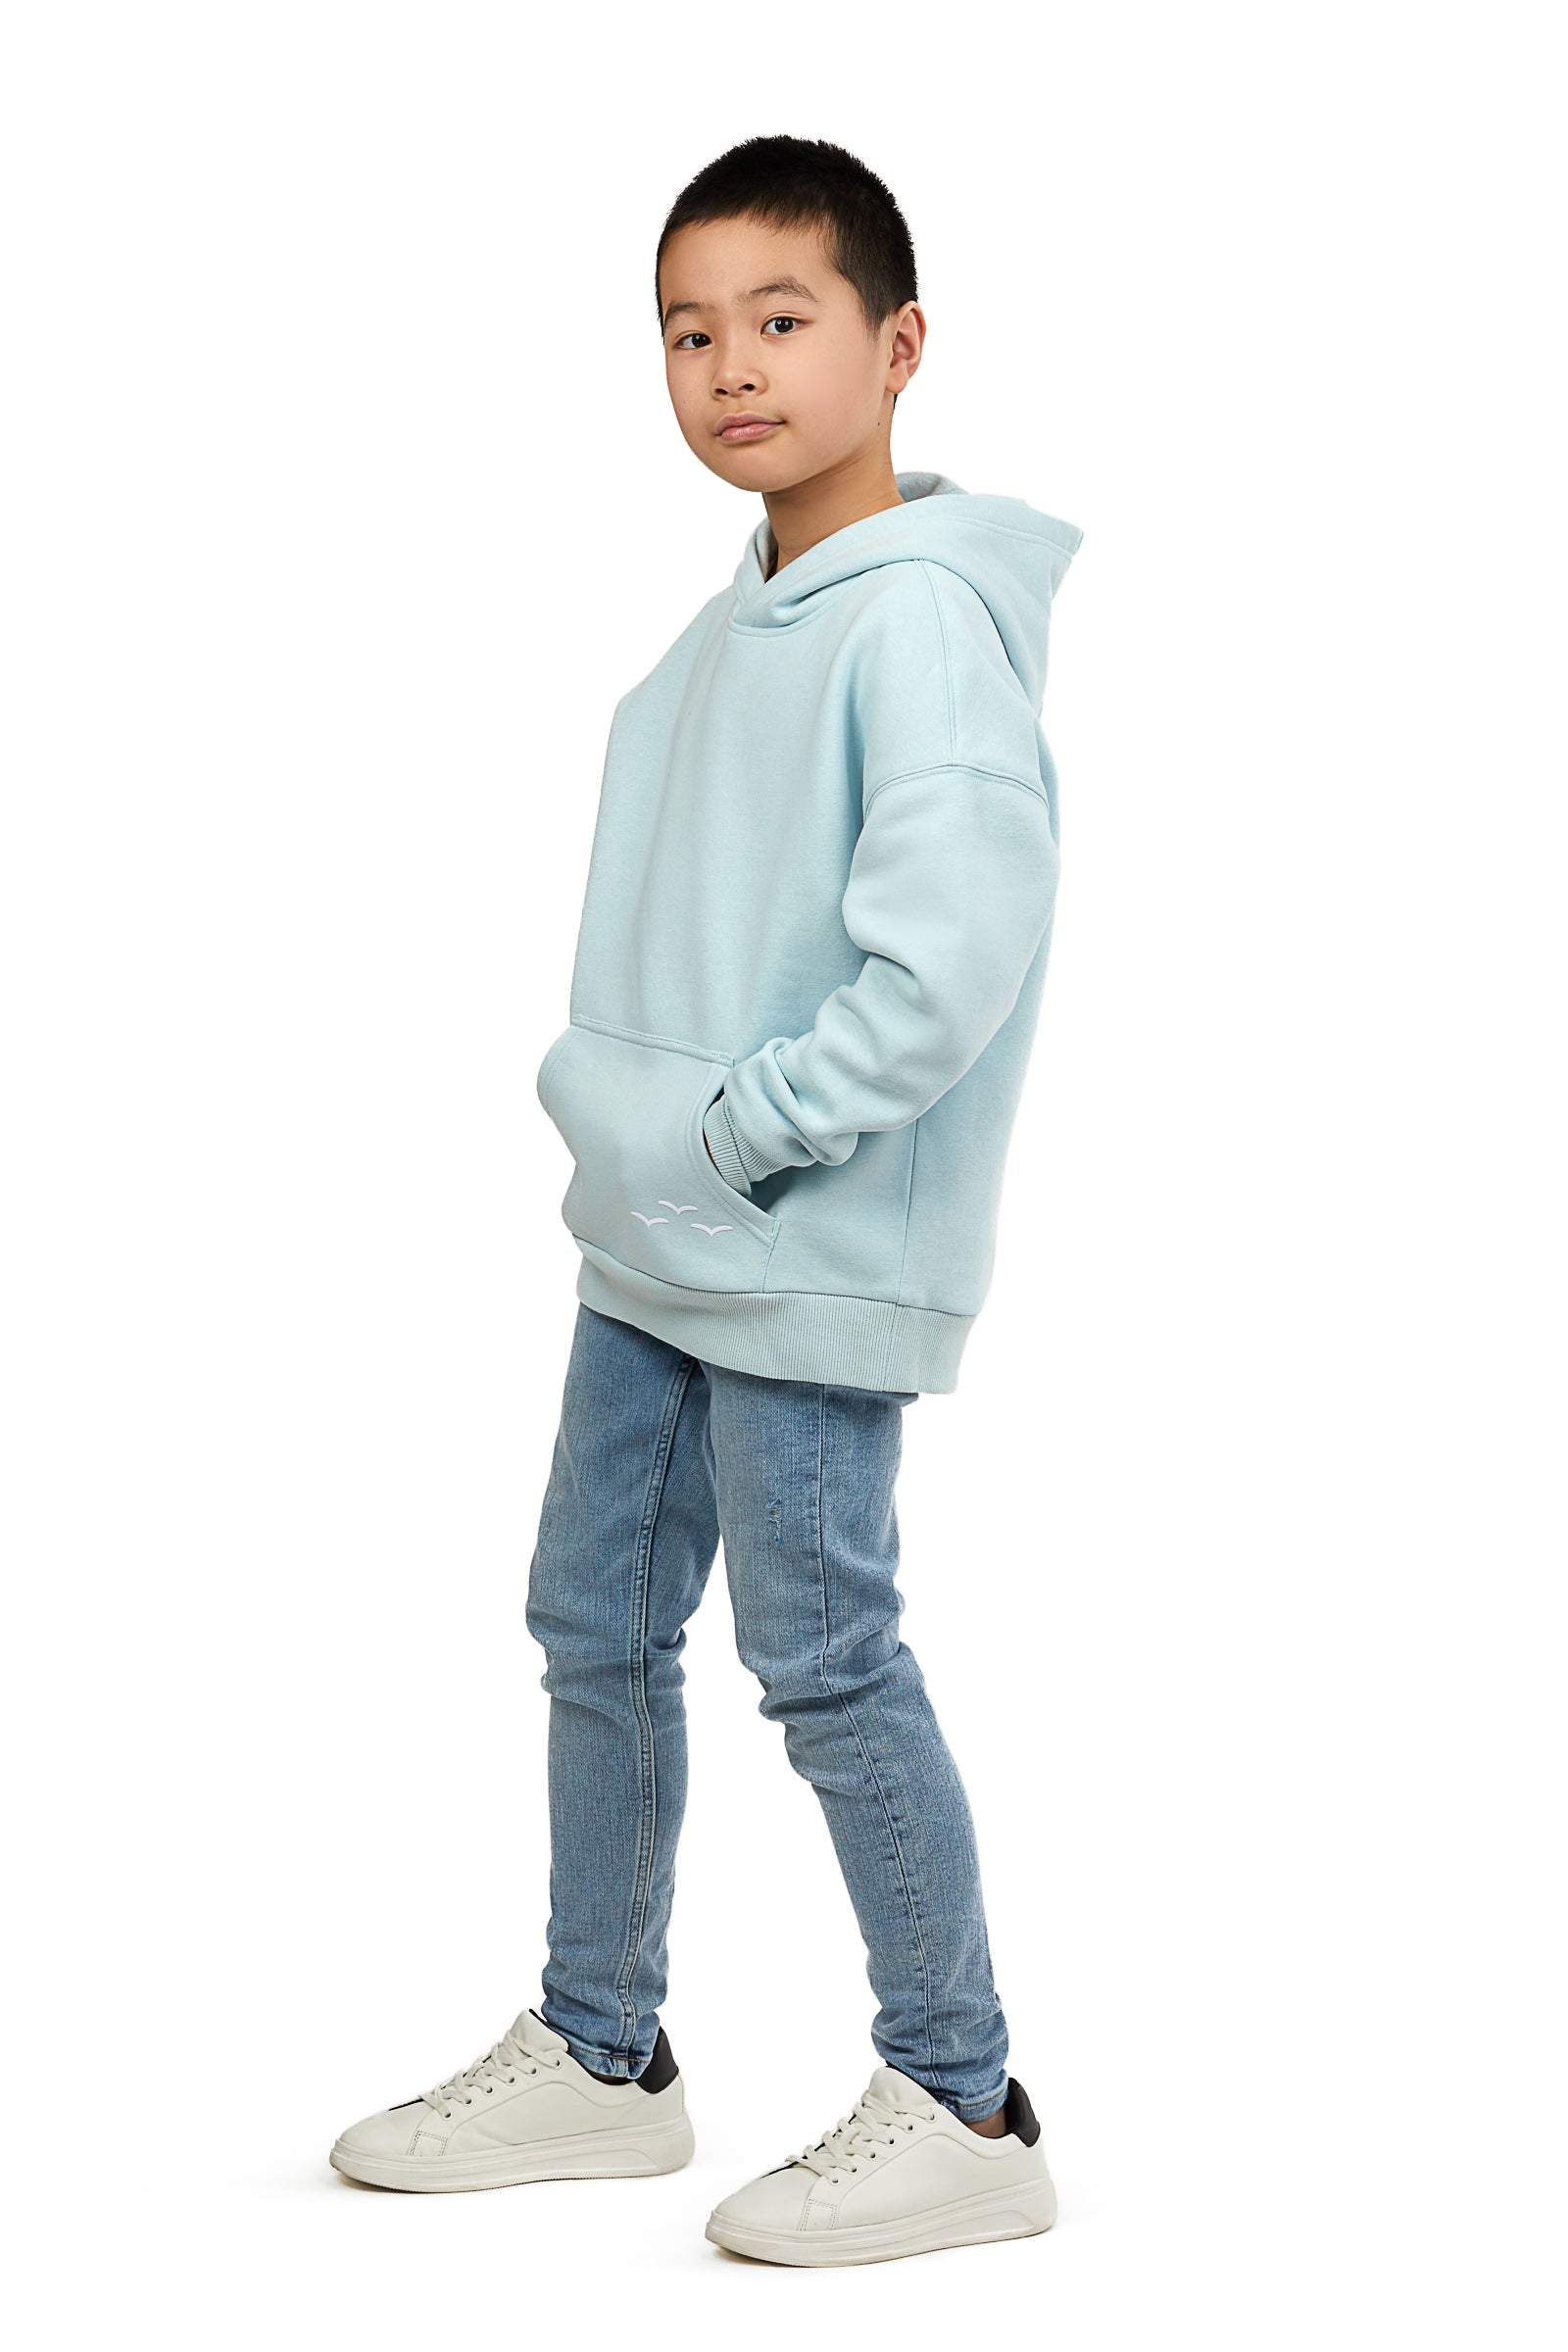 Kids Cooper hoodie in ice blue | sweatshirts & hoodies | Lazypants